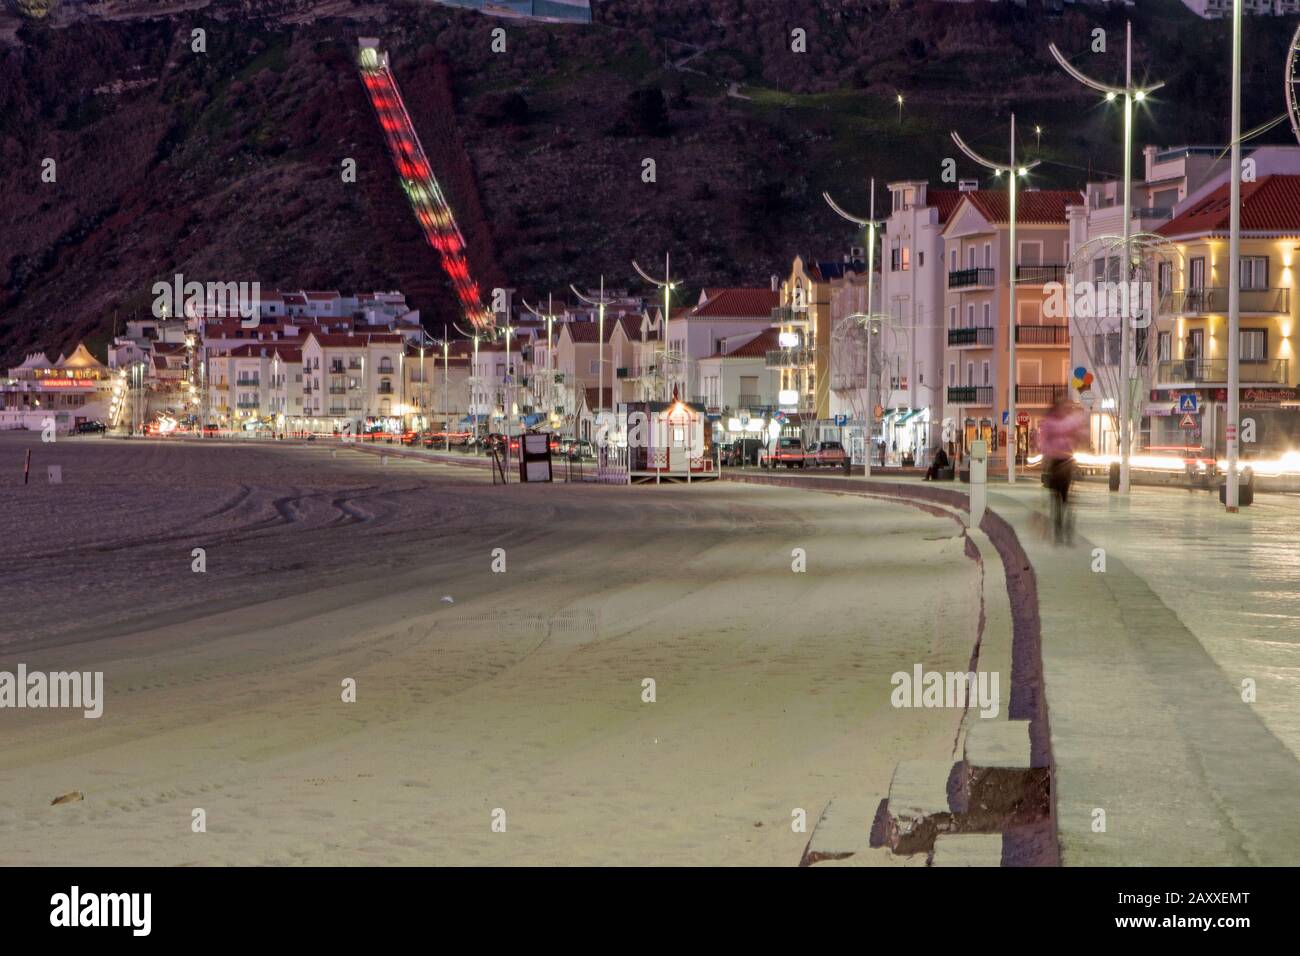 Soirée calme sur le front de mer. Le téléphérique de Praia à Sitia brille en rouge. Banque D'Images